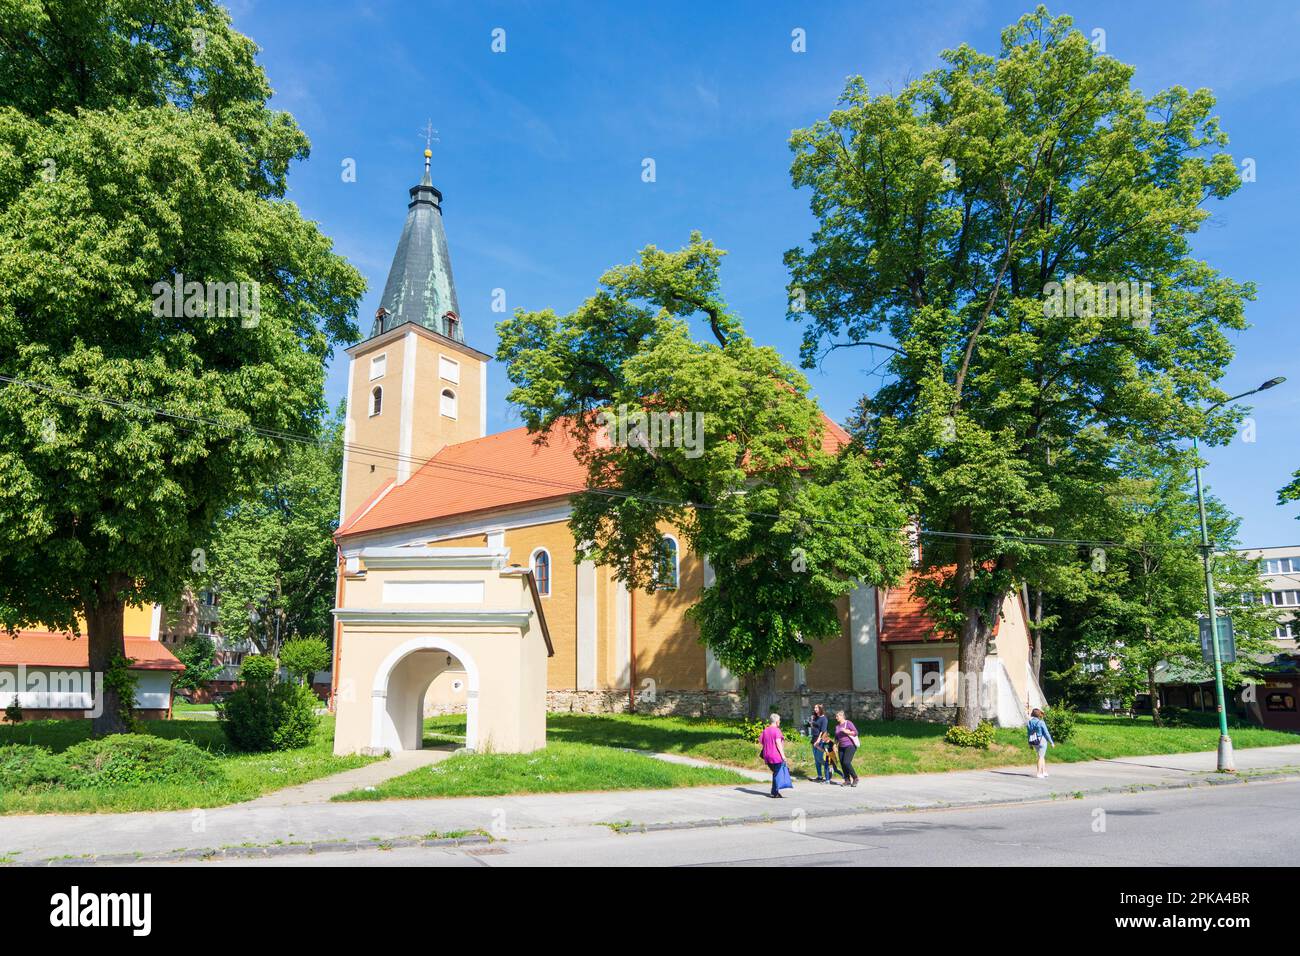 Myjava, Catholic Church in Slovakia Stock Photo